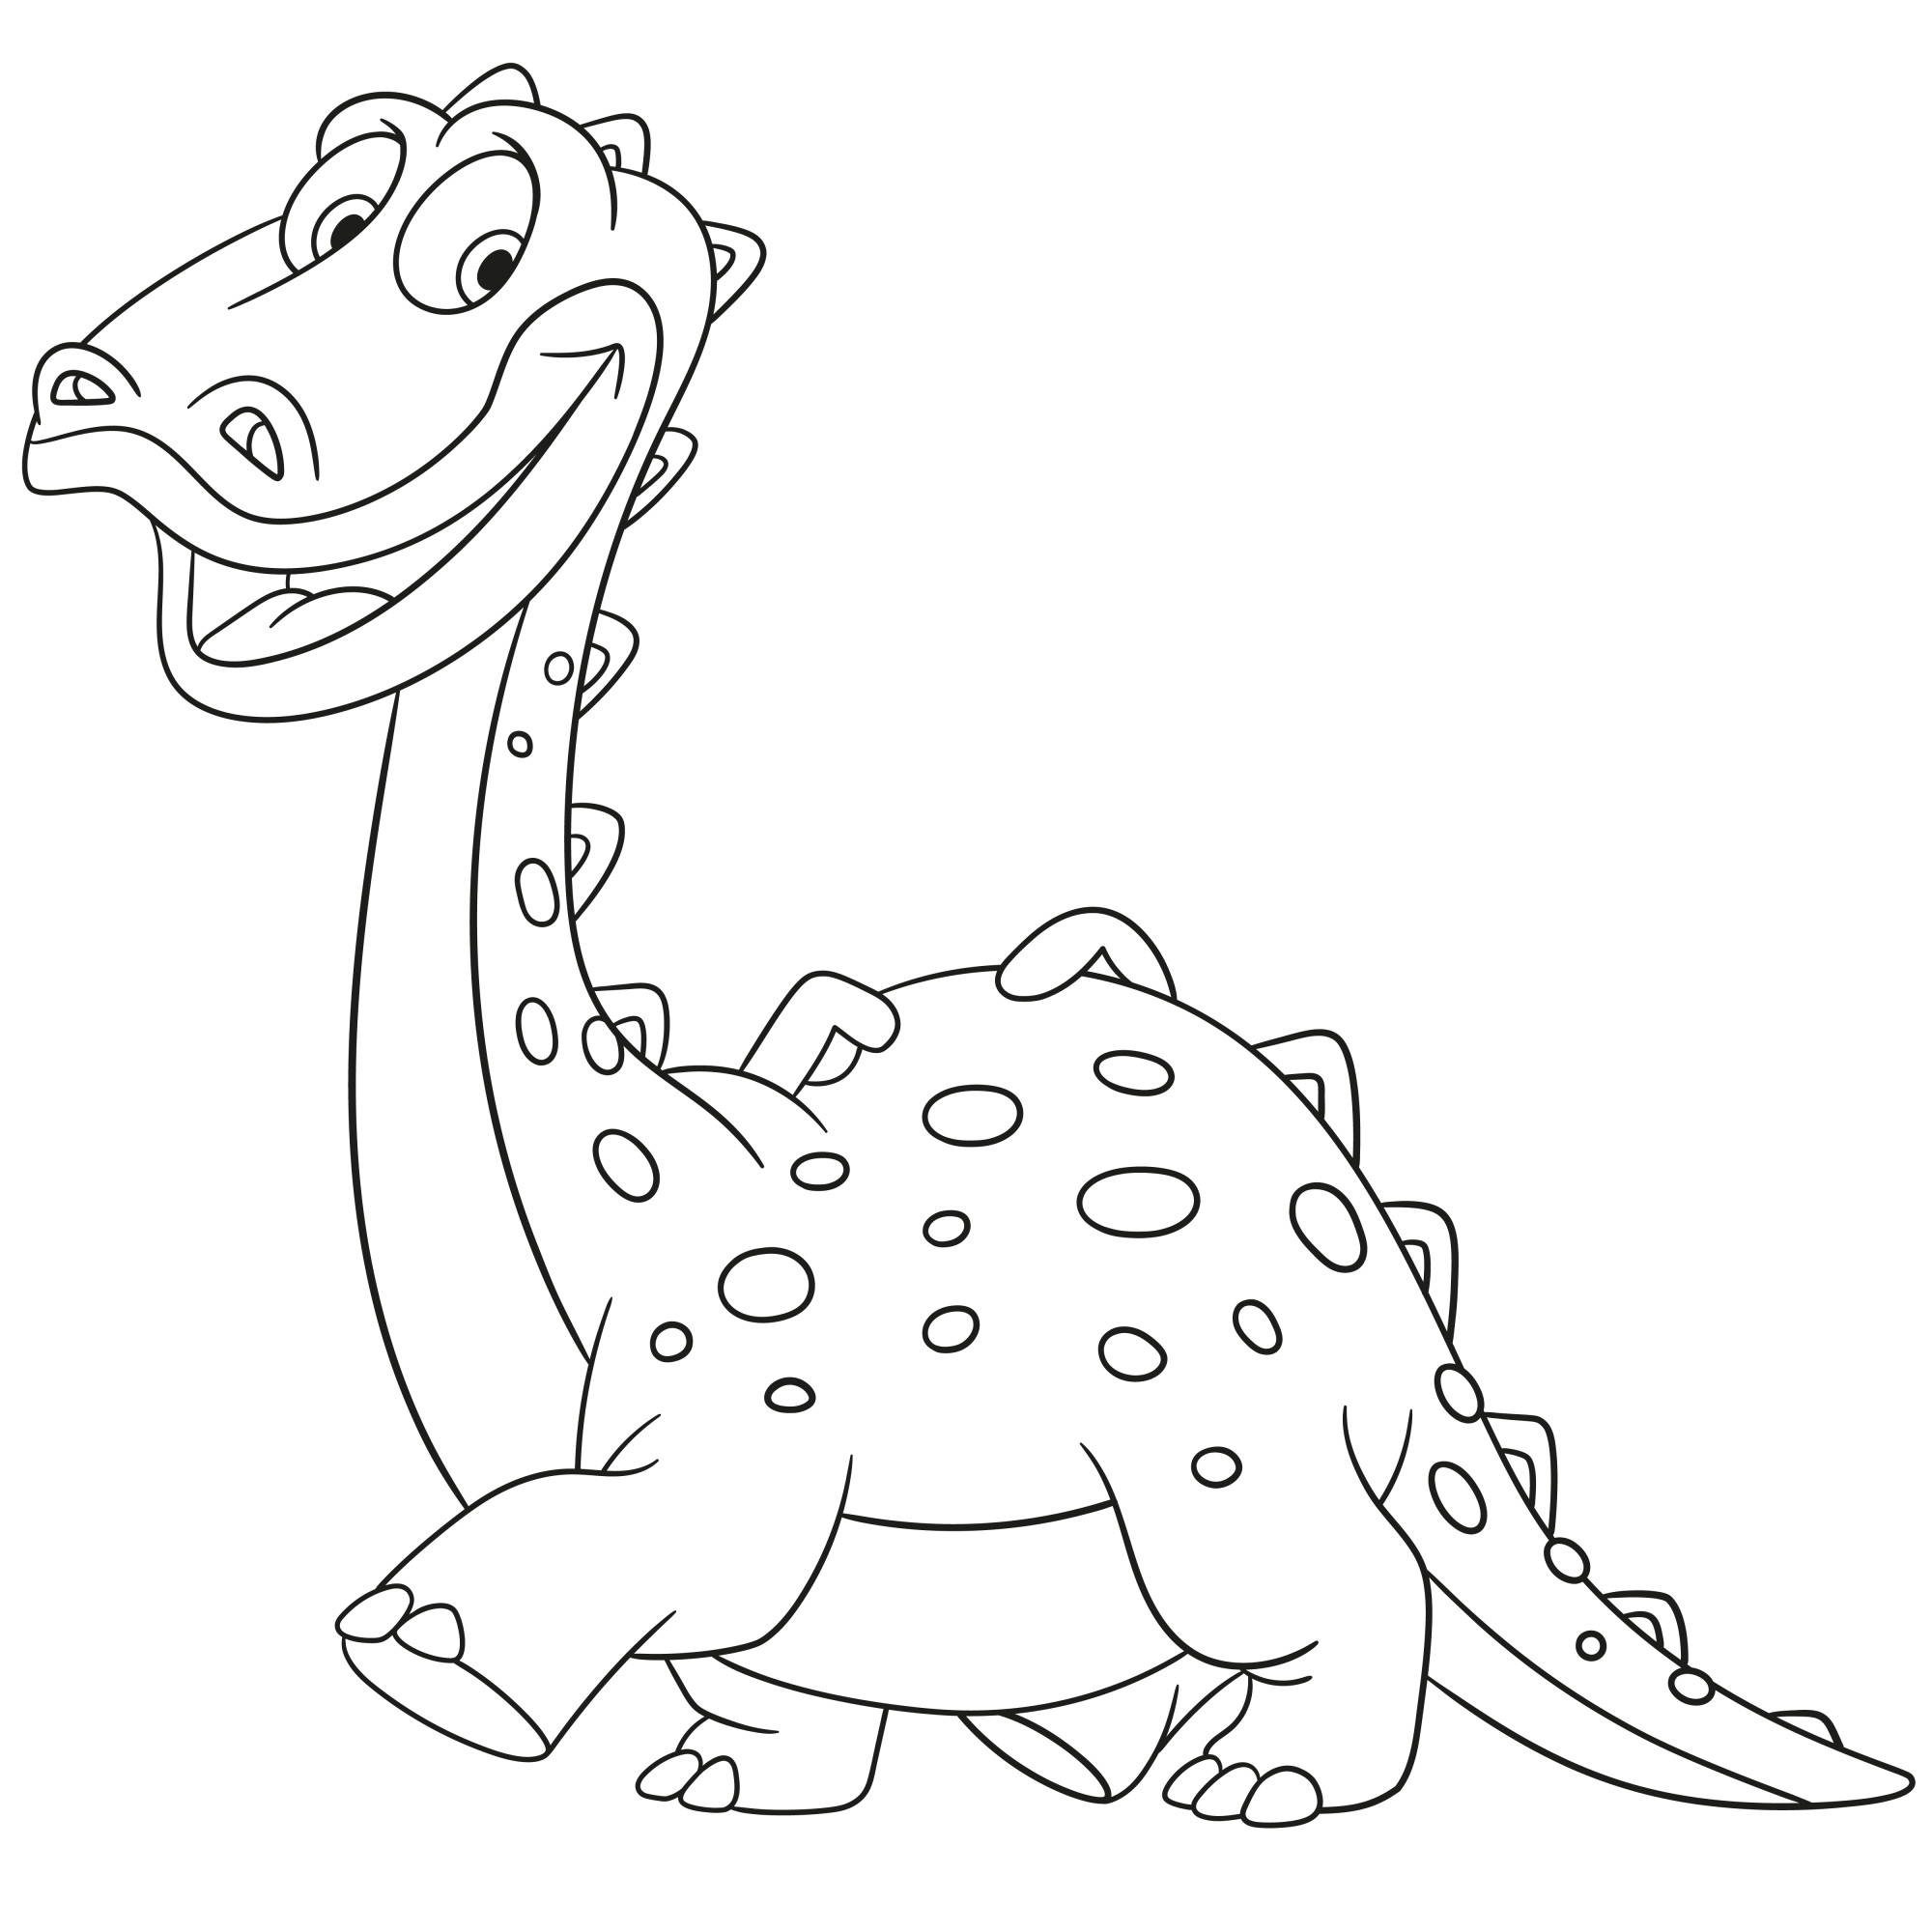 Раскраска для детей: счастливый динозавр-диплодок шагает